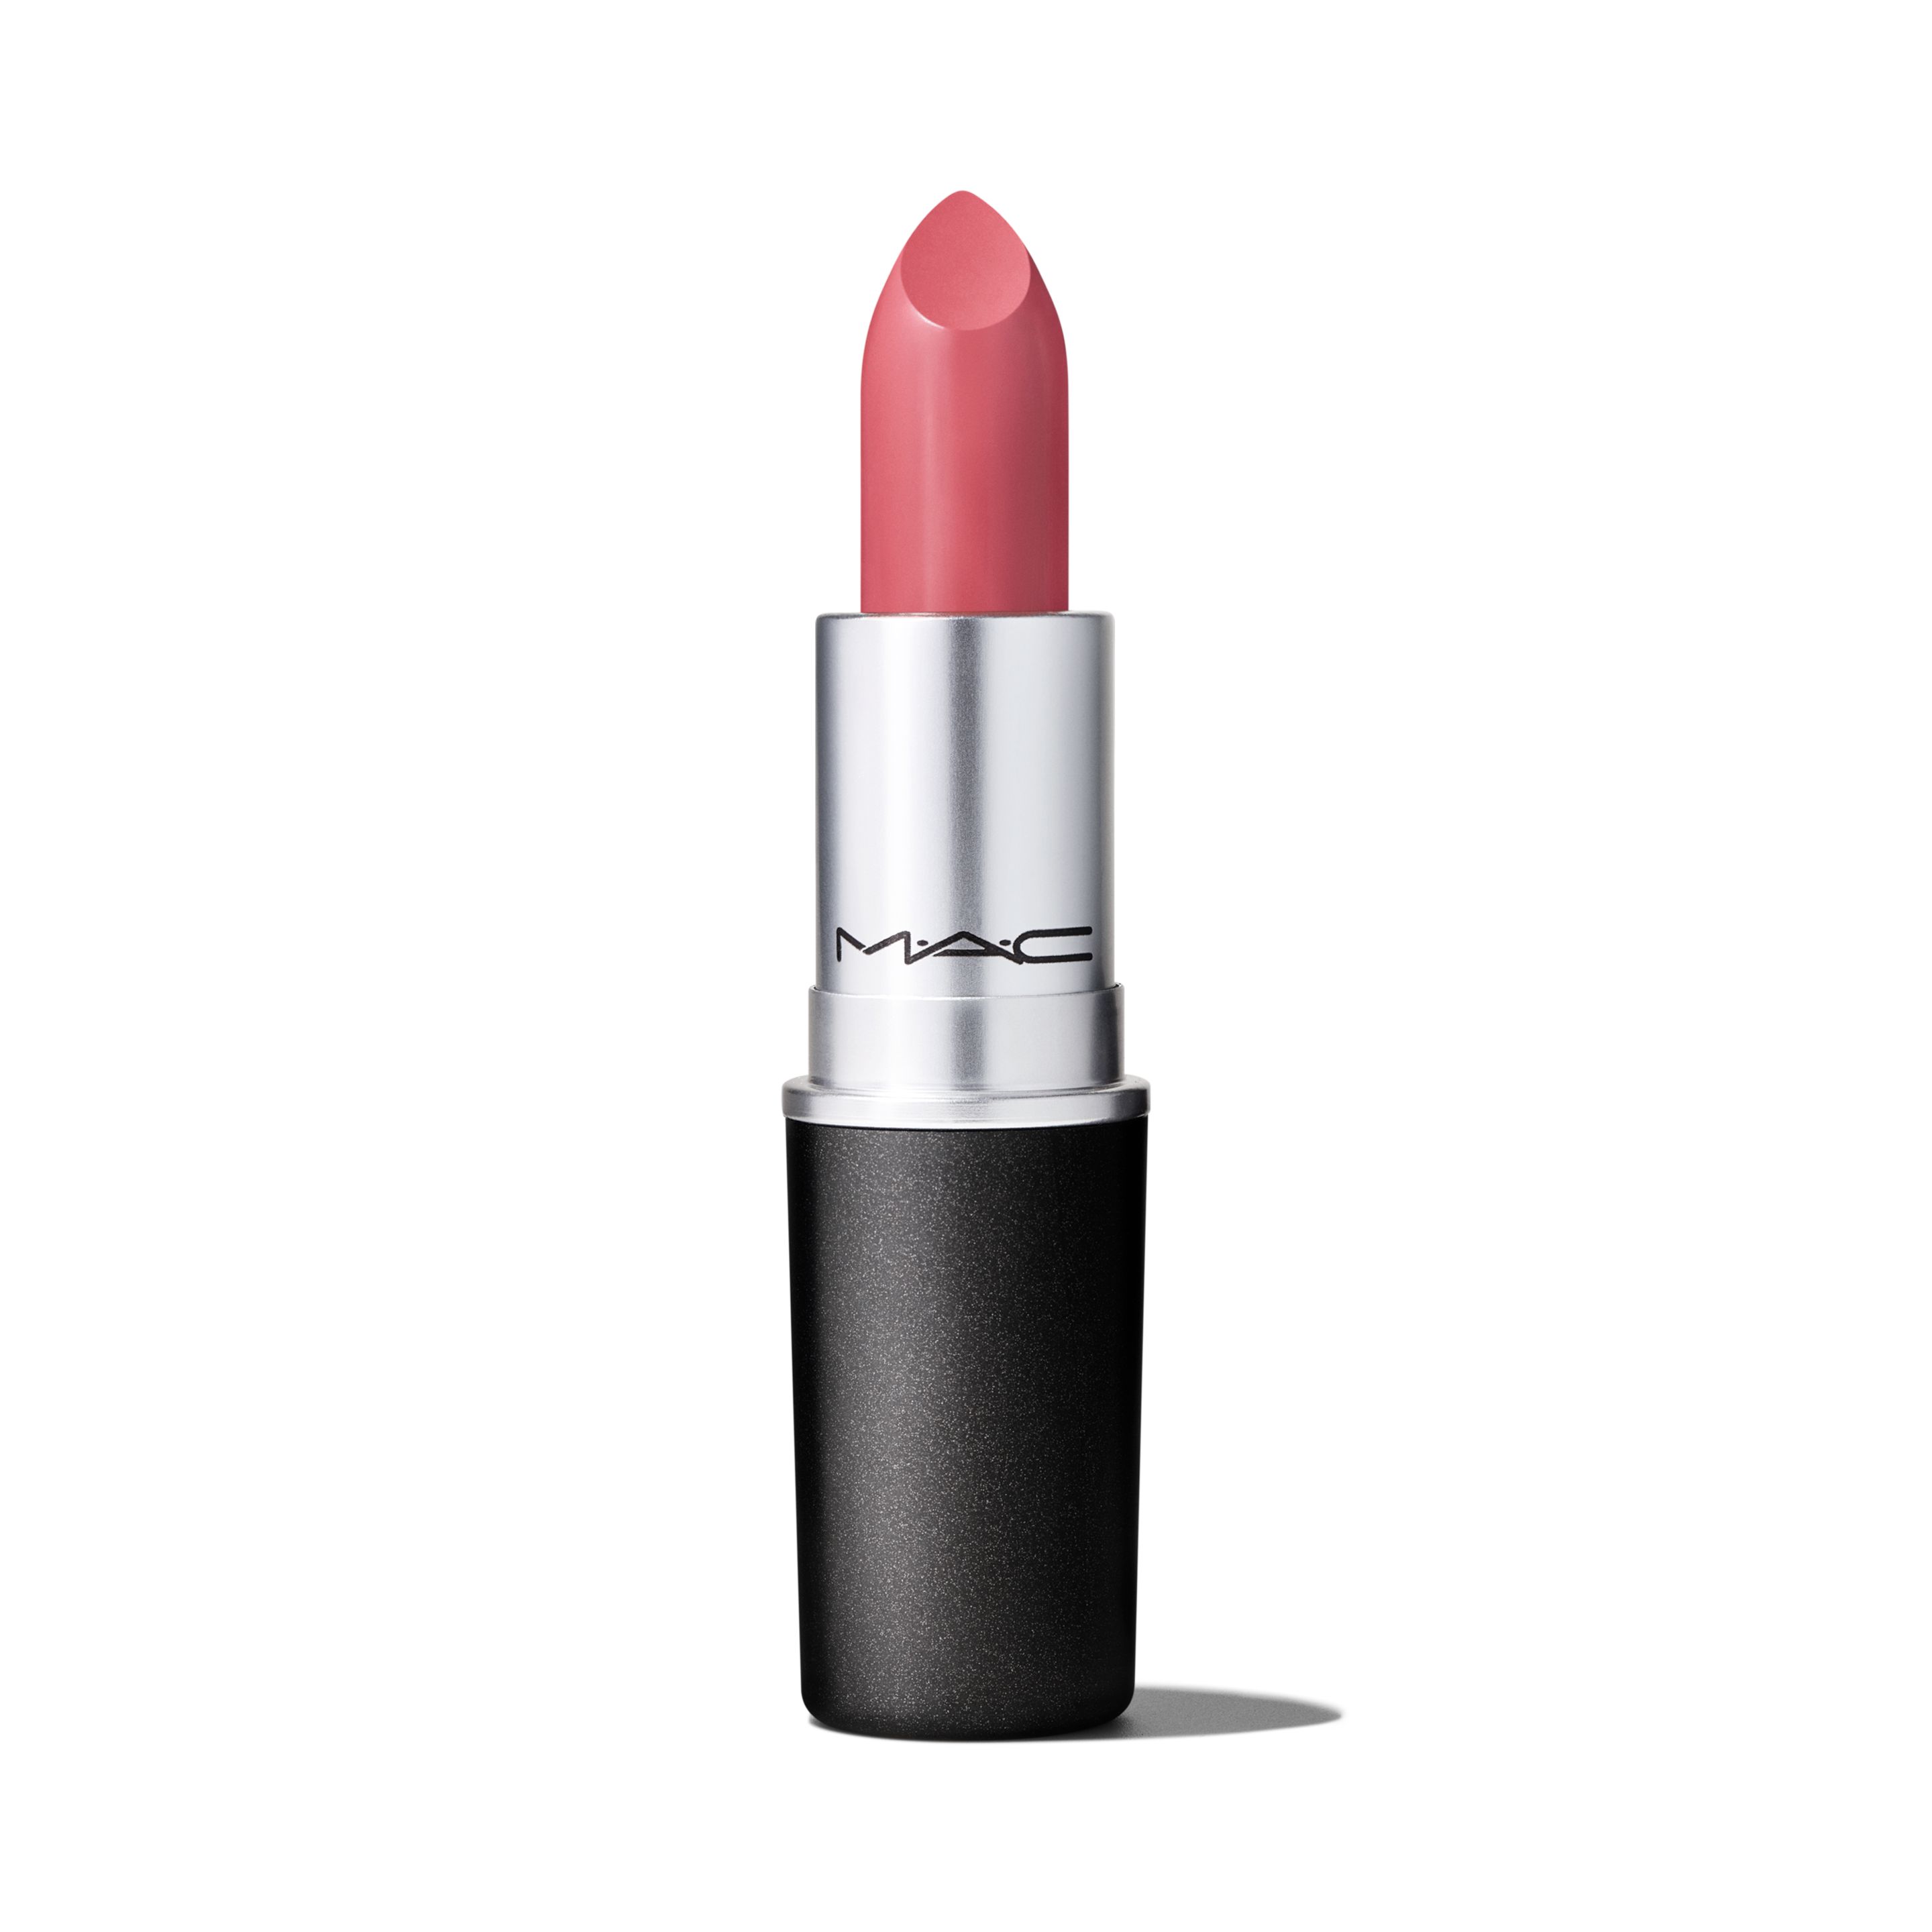 Помада для губ MAC Cosmetics Satin Lipstick кремовая, тон Brave, 3 г помада для губ mac cosmetics satin lipstick кремовая тон twig 3 г